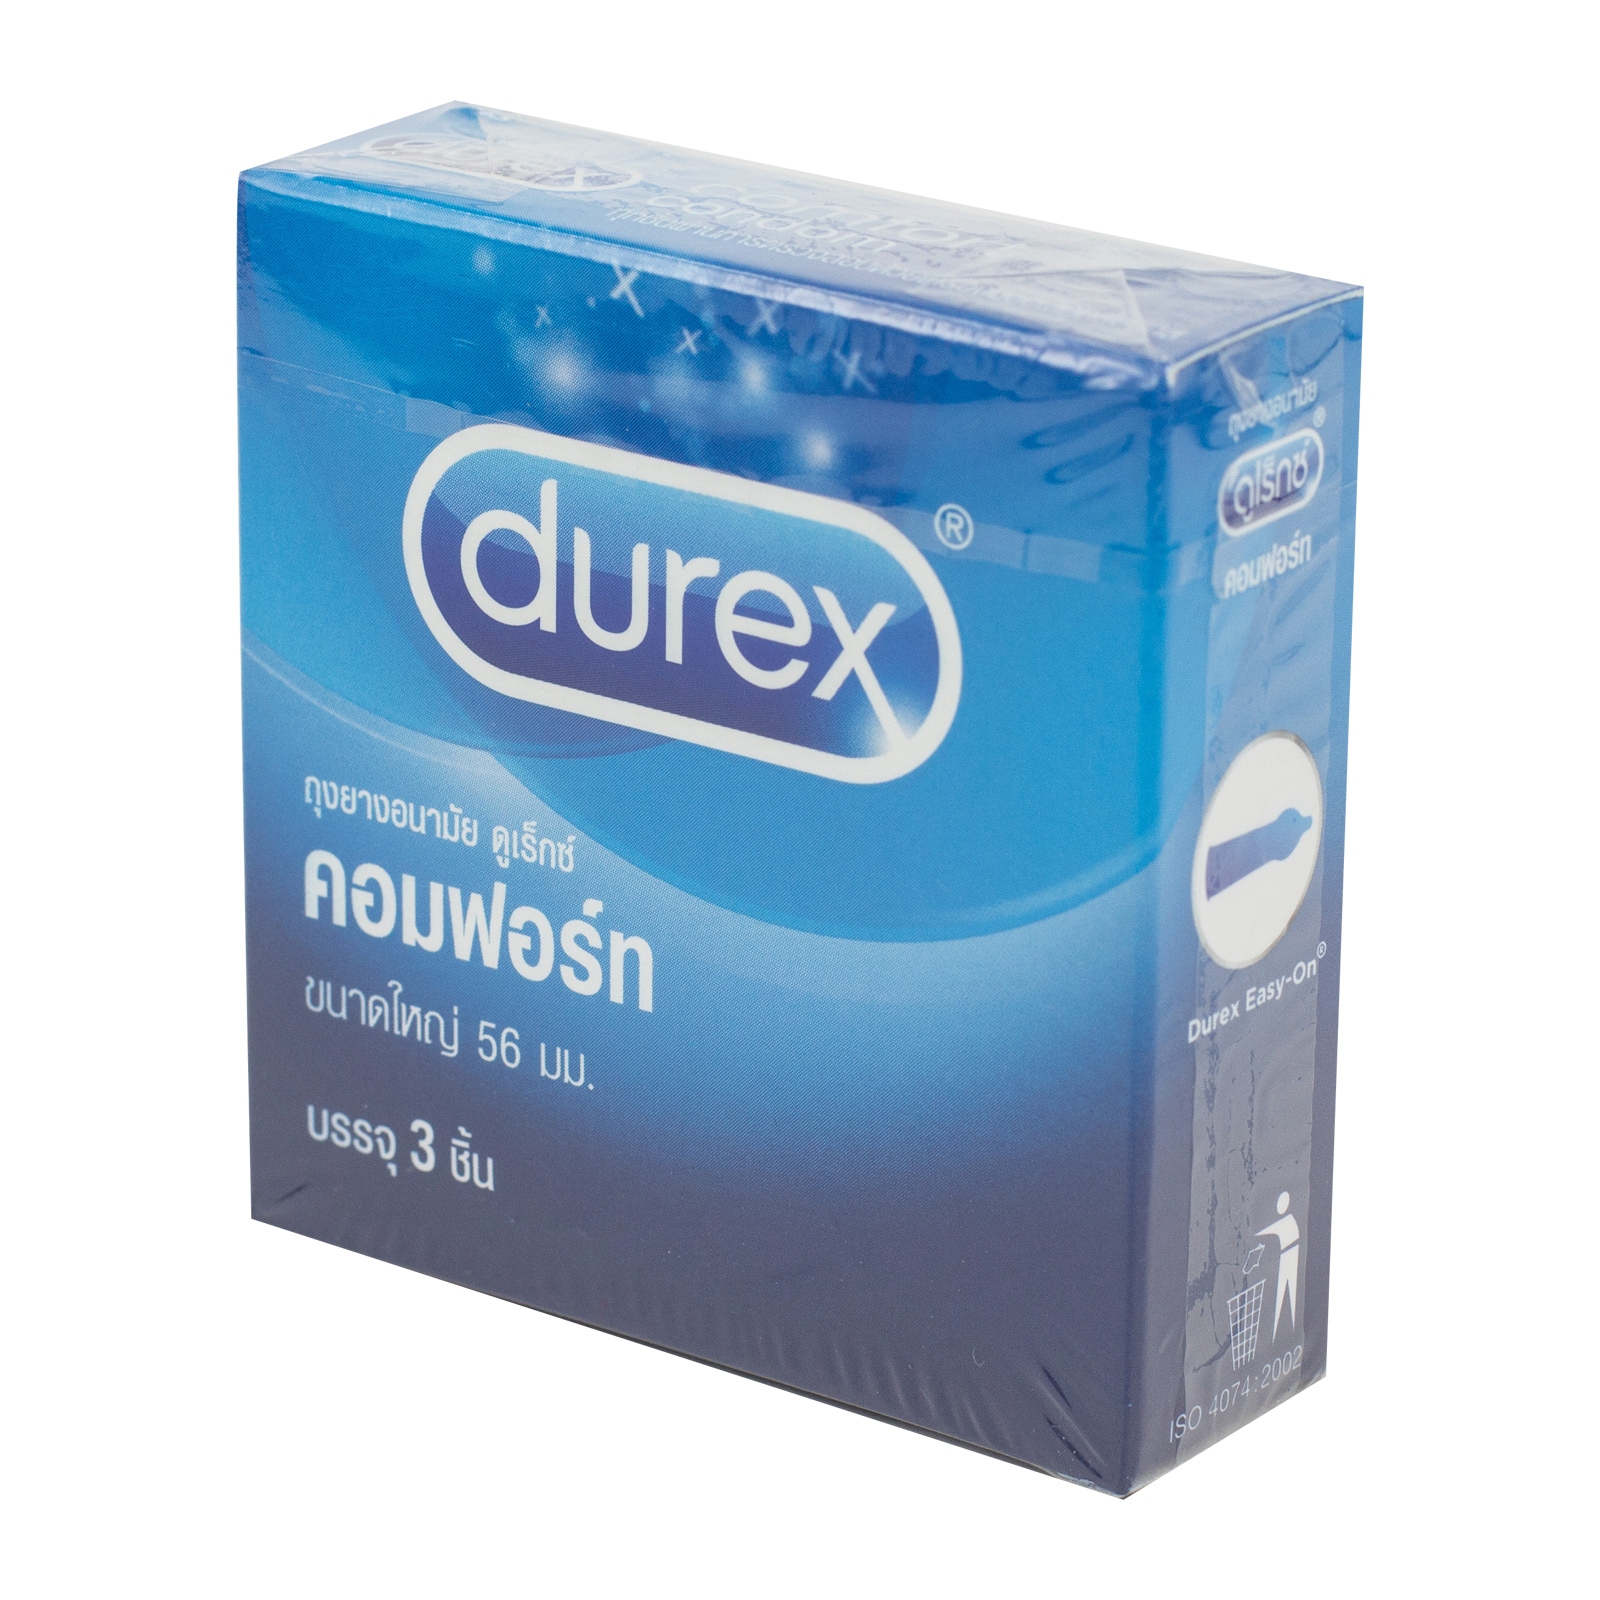 Durex Comfort Condom (ดูเร็กซ์ คอมฟอร์ท)